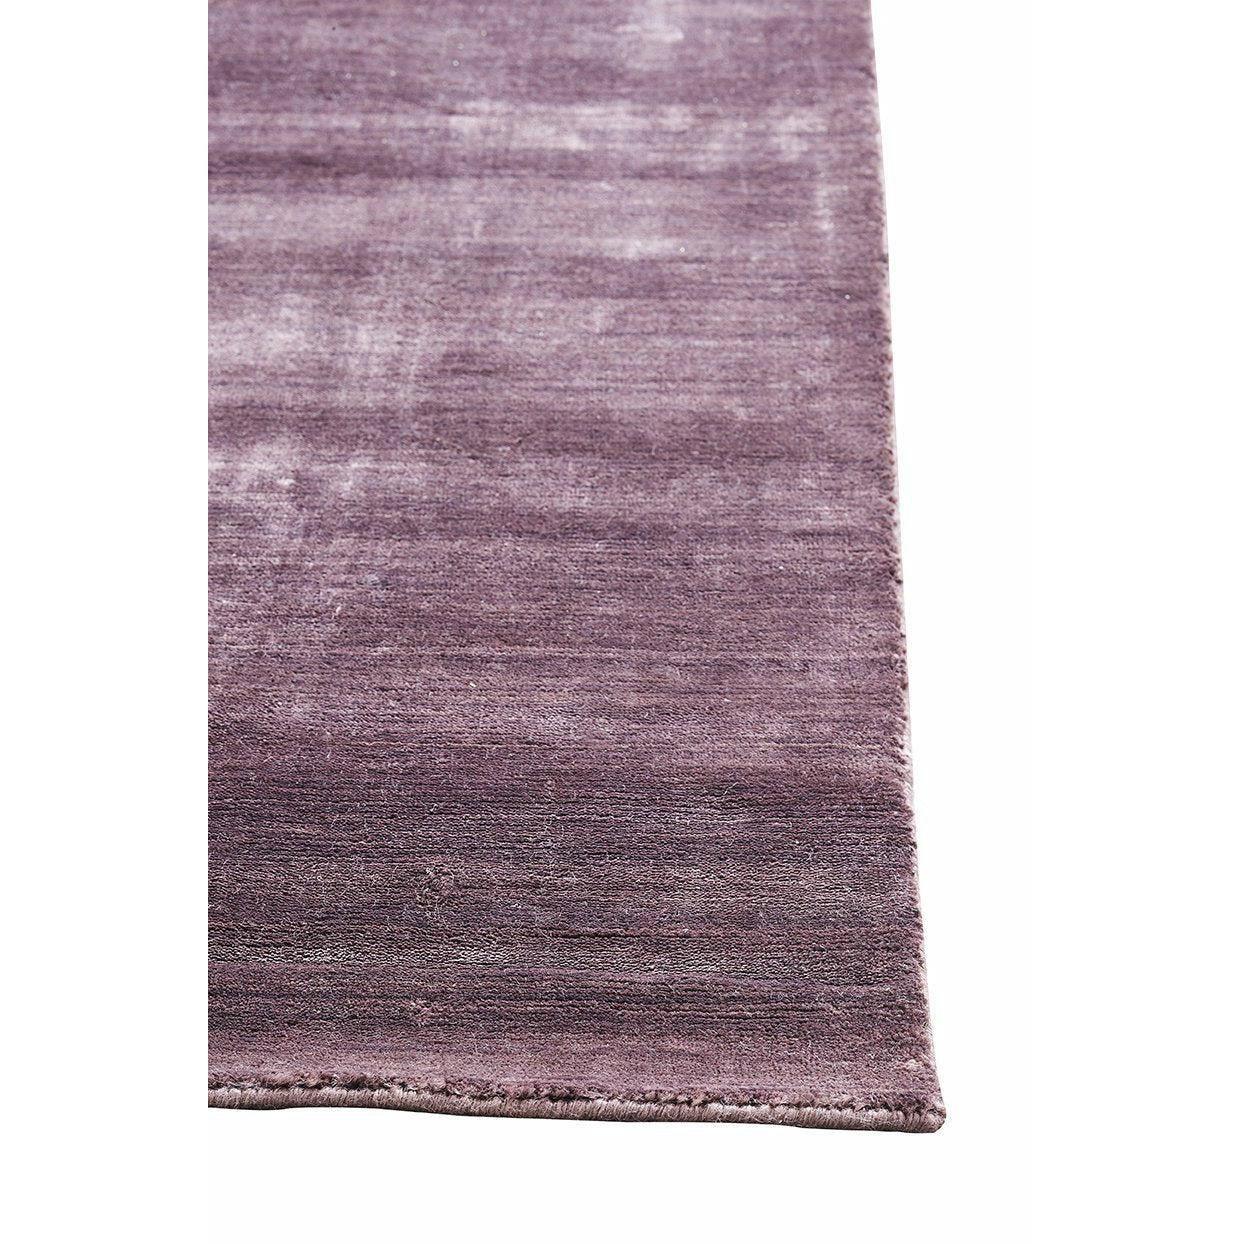 Massimo Bambus tæppe blomme, 140x200 cm